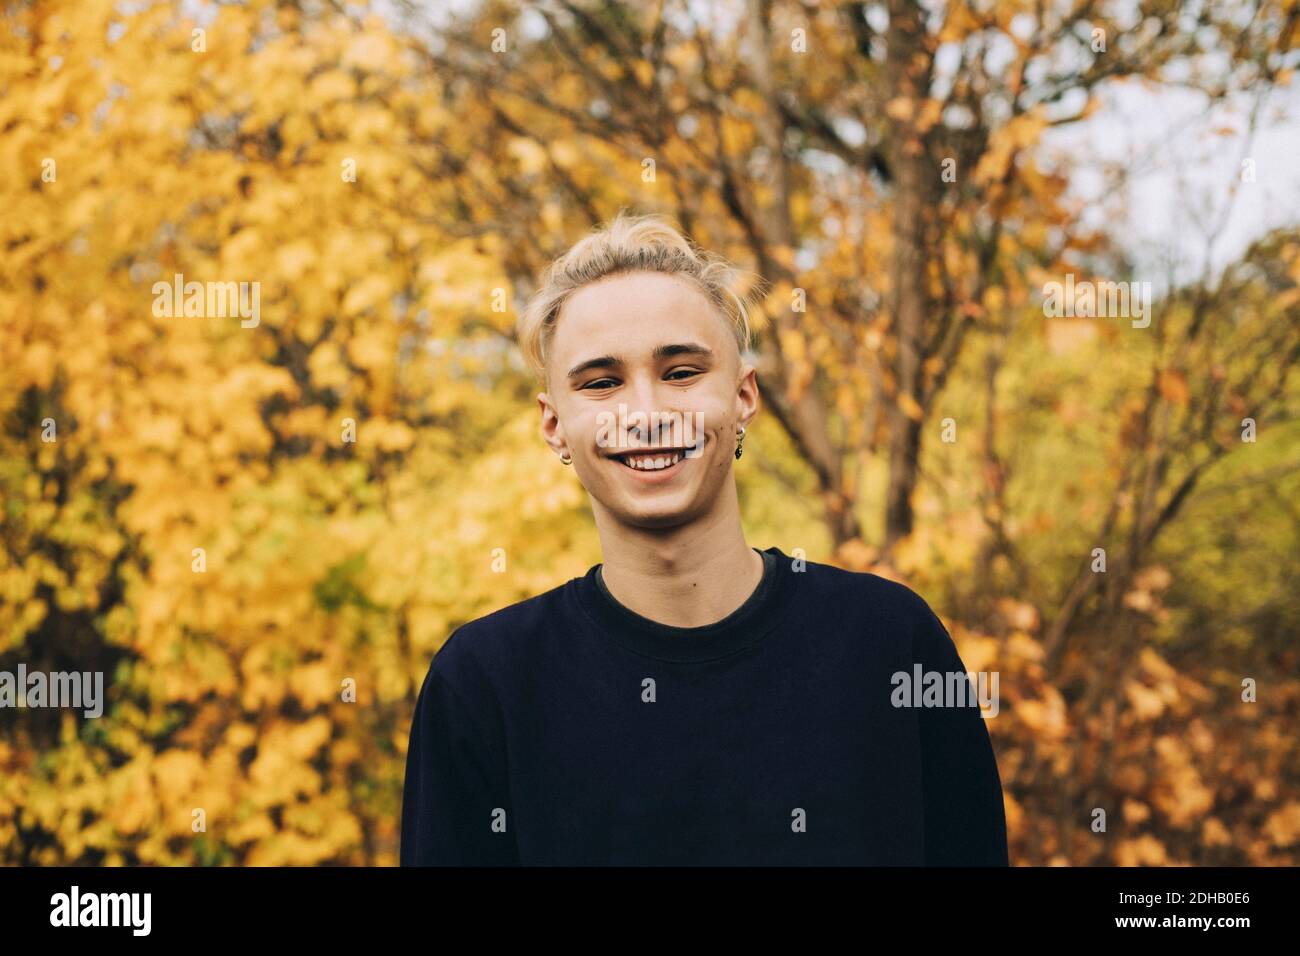 Retrato de un adolescente sonriente con pelo rubio en contra arce Foto de stock